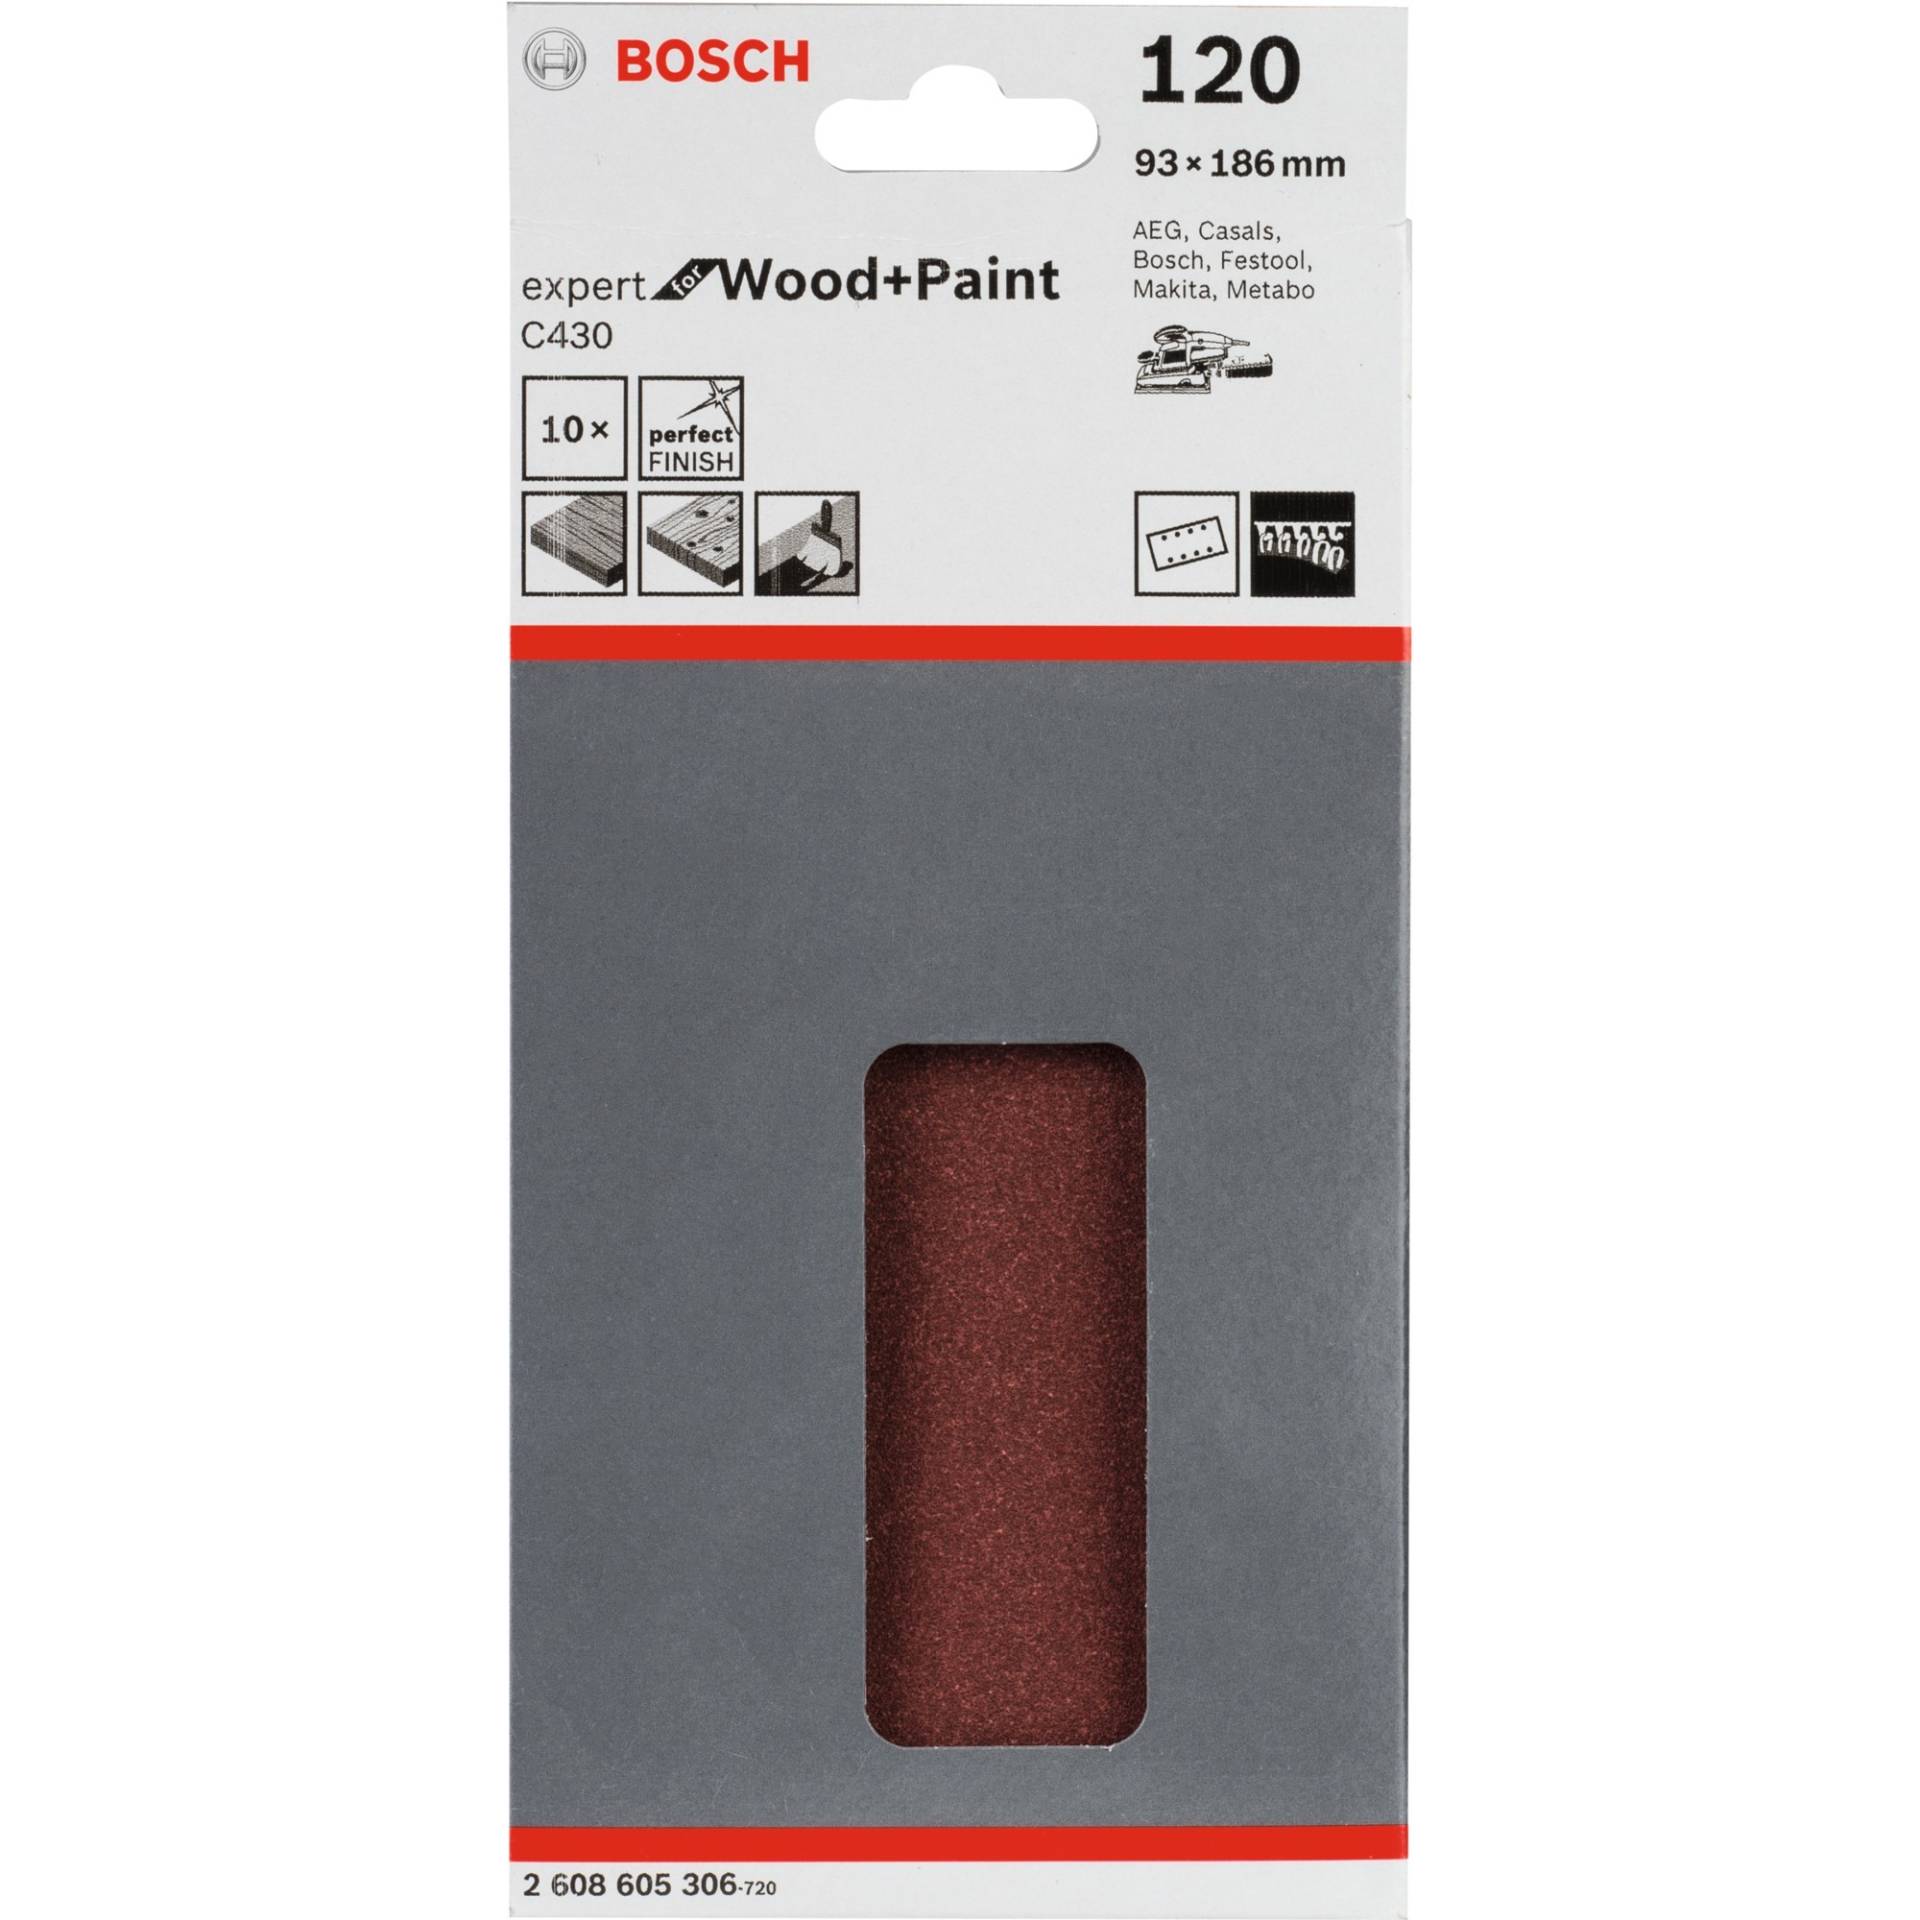 Schleifblatt C430 Expert for Wood and Paint, 93x186mm, K120 von Bosch